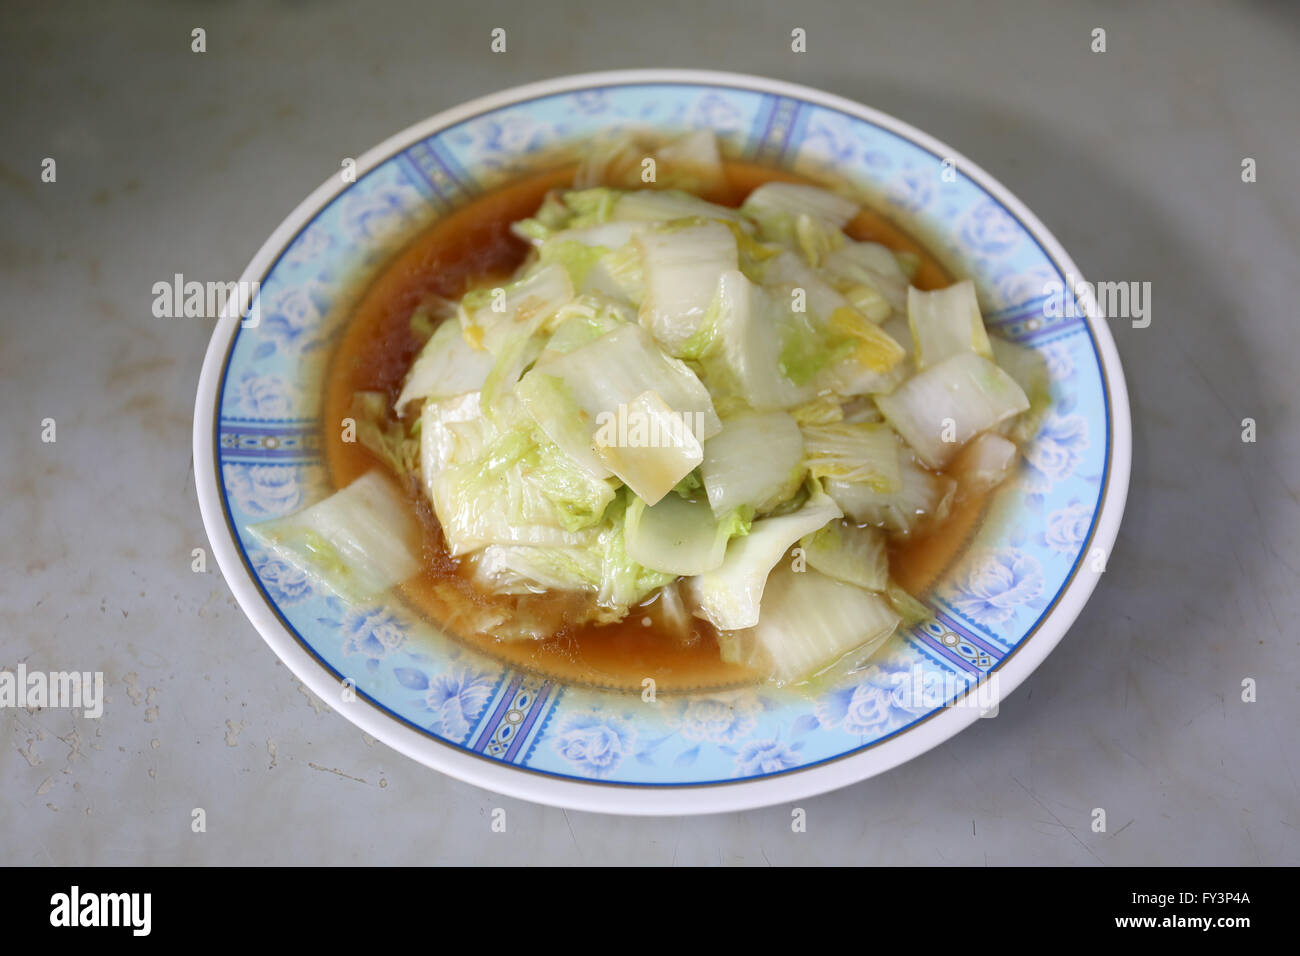 Lattuga in pasta salsa di soia nel piatto,questo è un cibo tailandese. Foto Stock